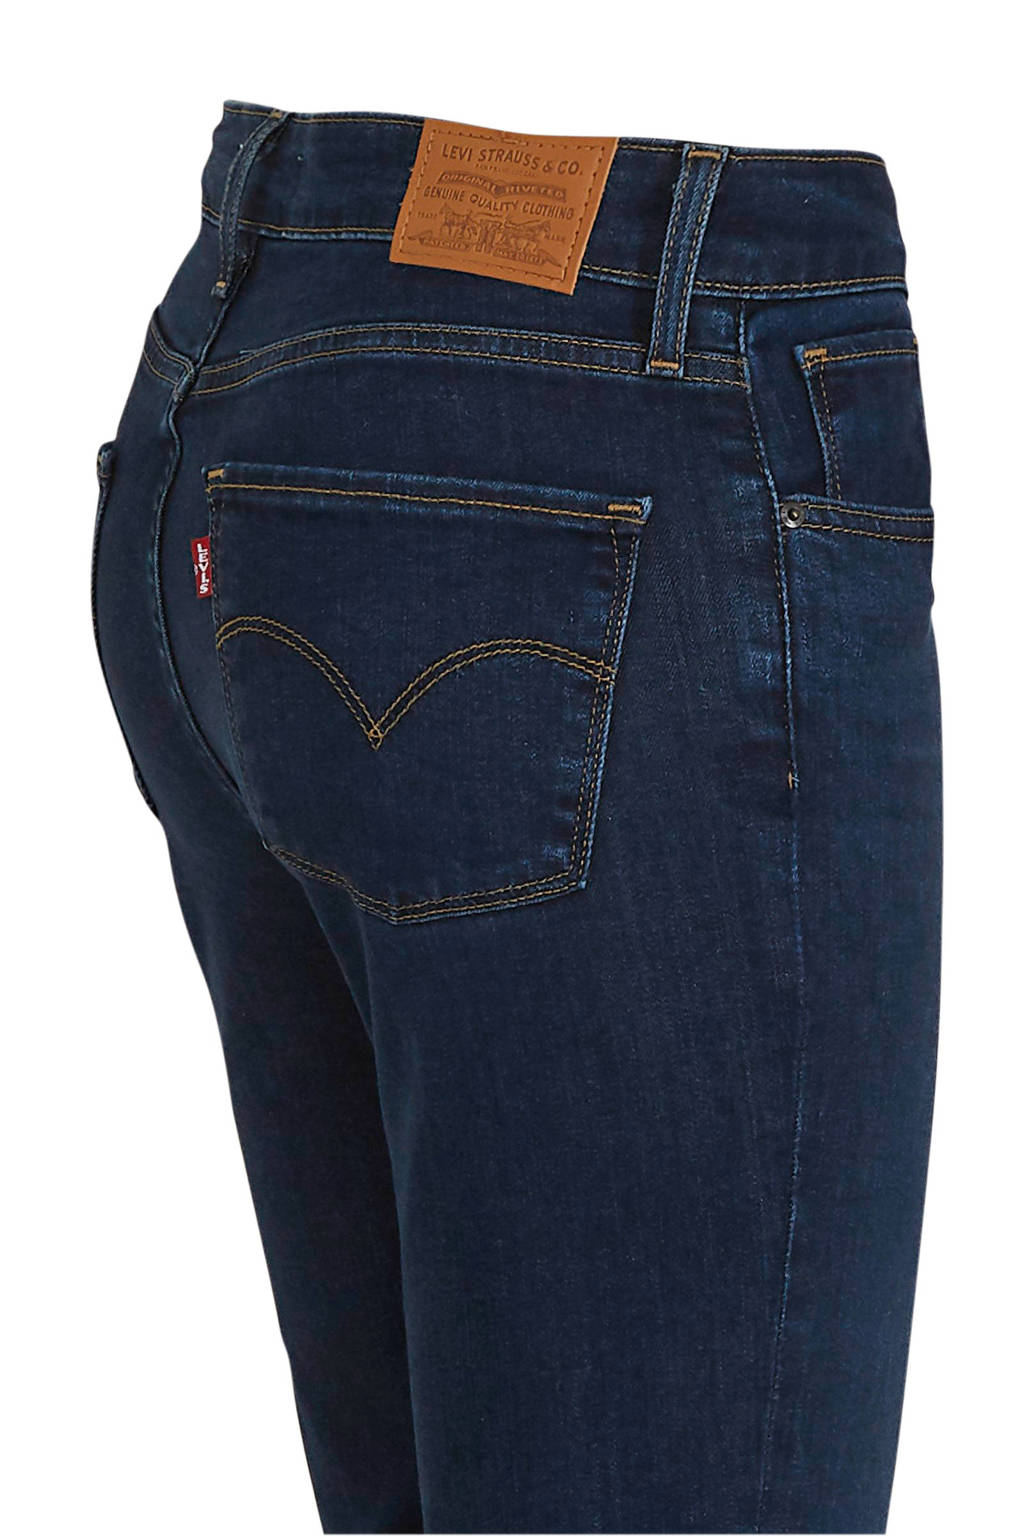 bed schommel afdeling Levi's 721 high waist skinny jeans bogota feels | wehkamp